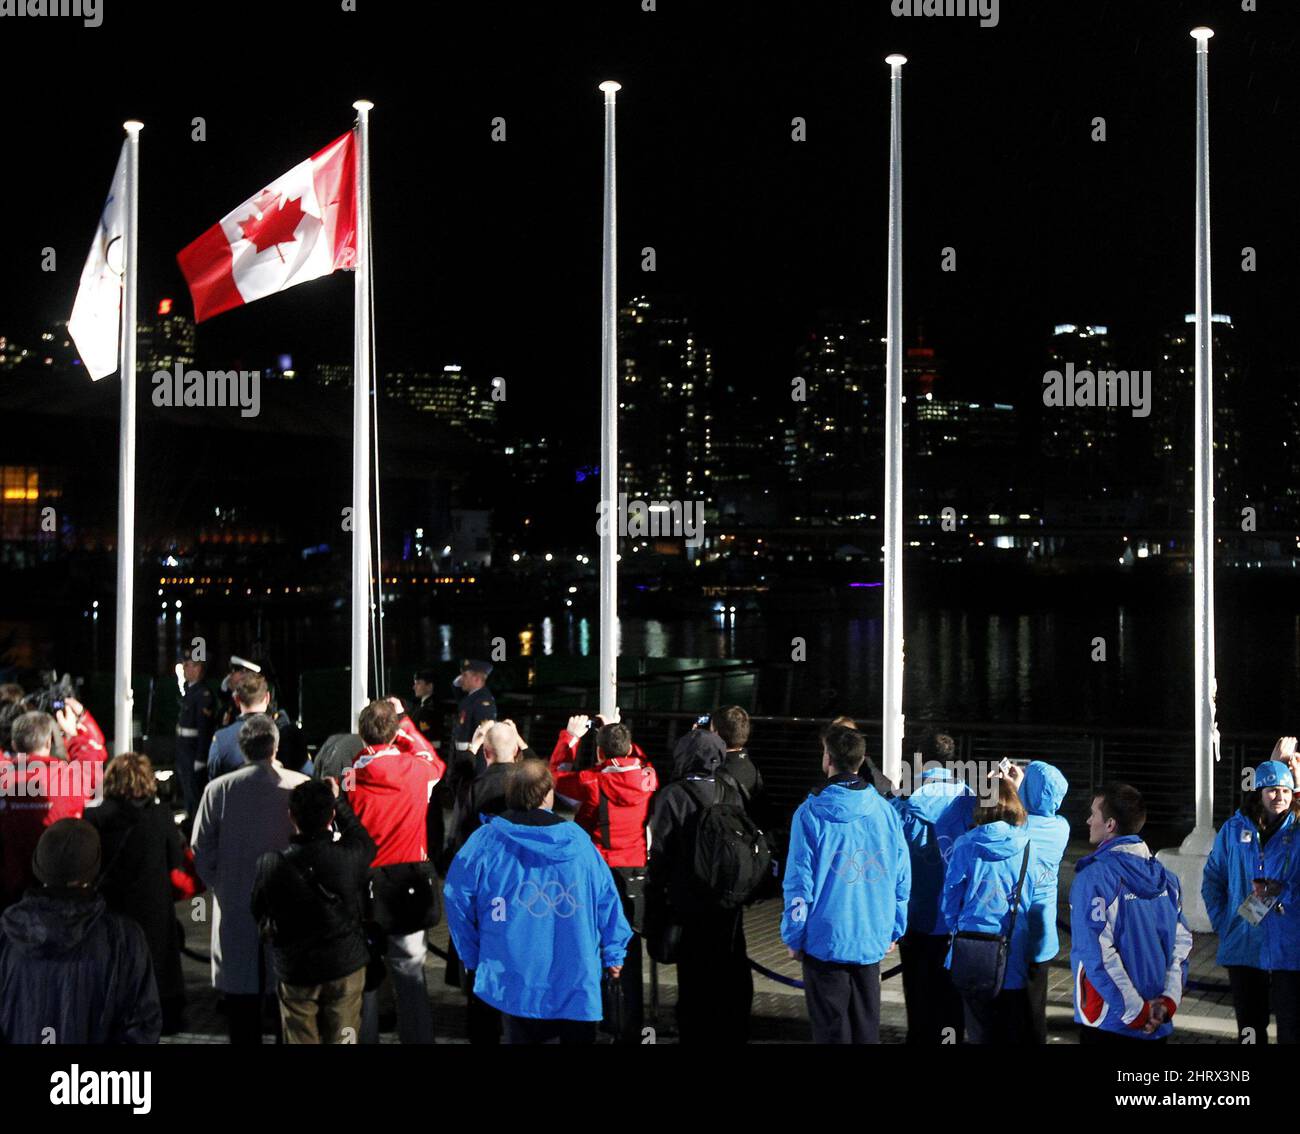 Les gens observent que le drapeau canadien est levé lors d'une cérémonie au village des athlètes olympiques, le mercredi 10 février 2010 à Vancouver. LA PRESSE CANADIENNE/Nathan Denette Banque D'Images